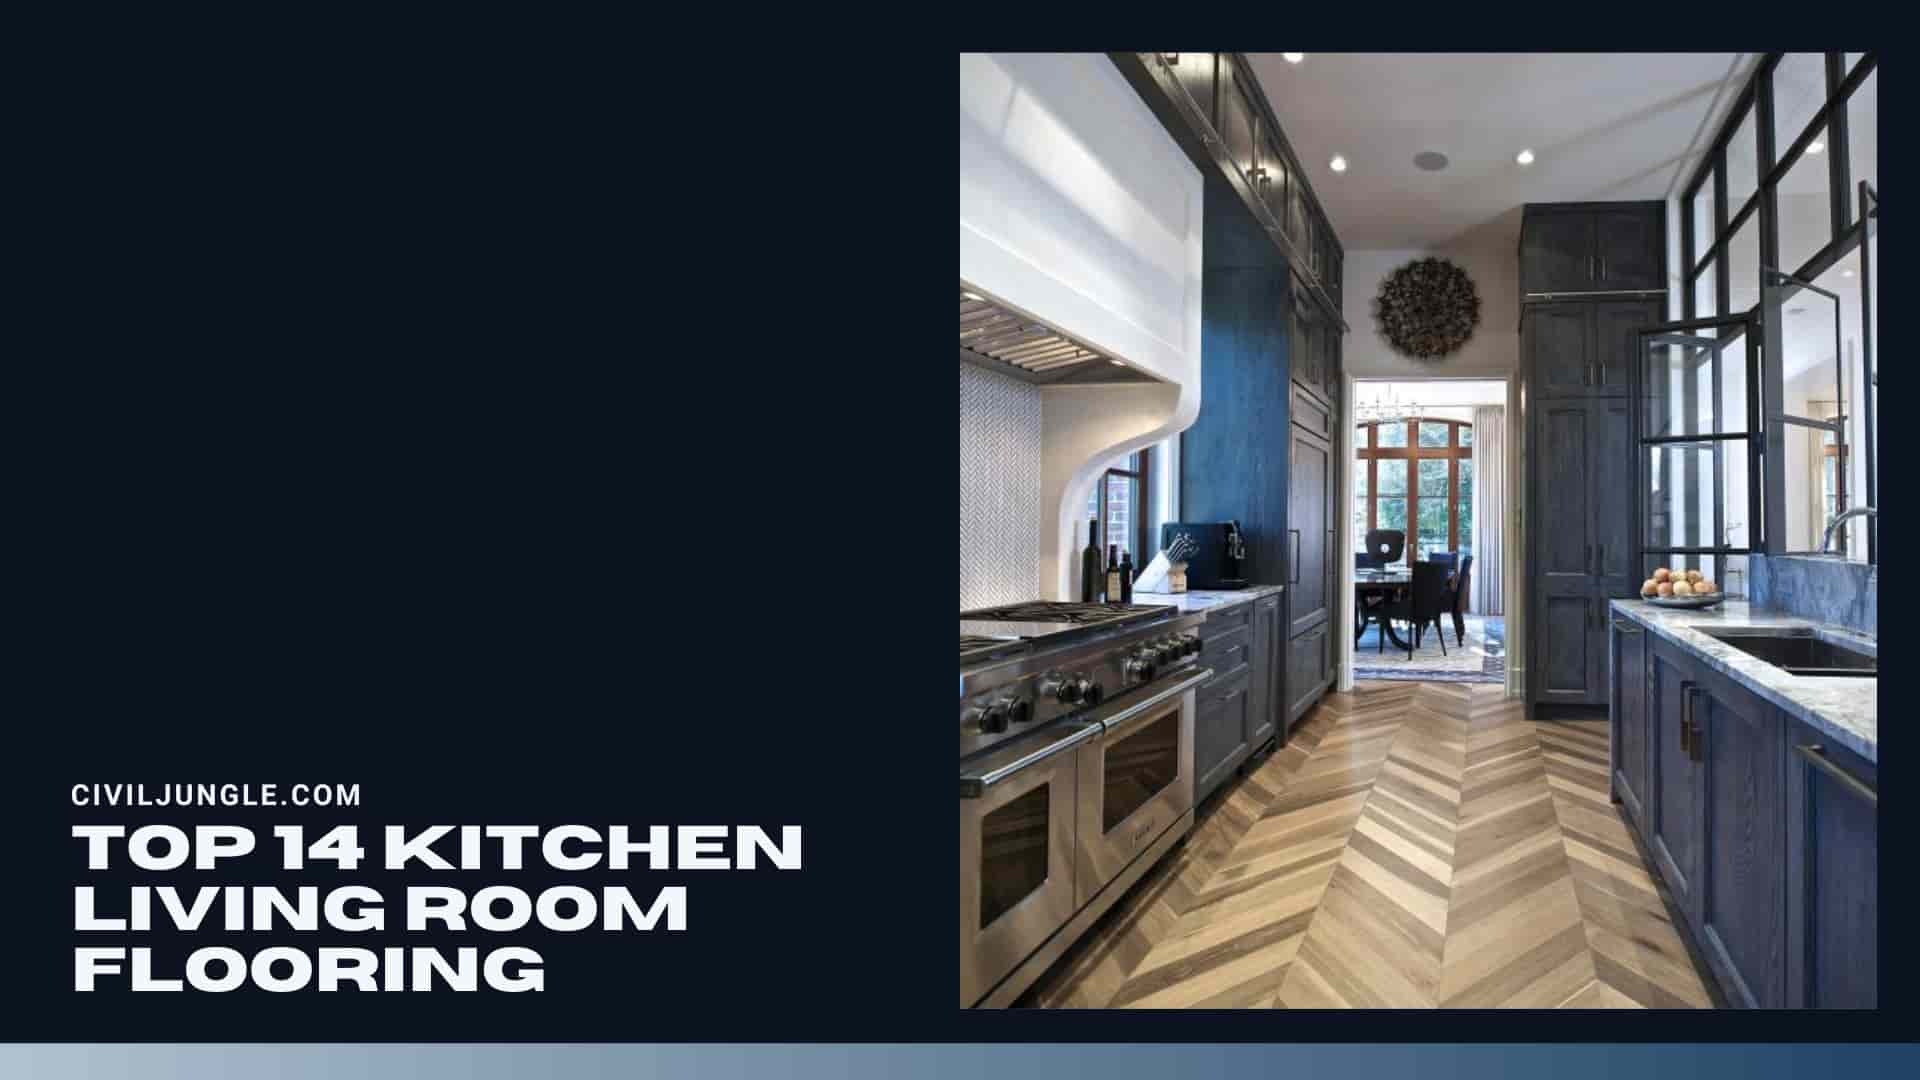 Top 14 Kitchen Living Room Flooring